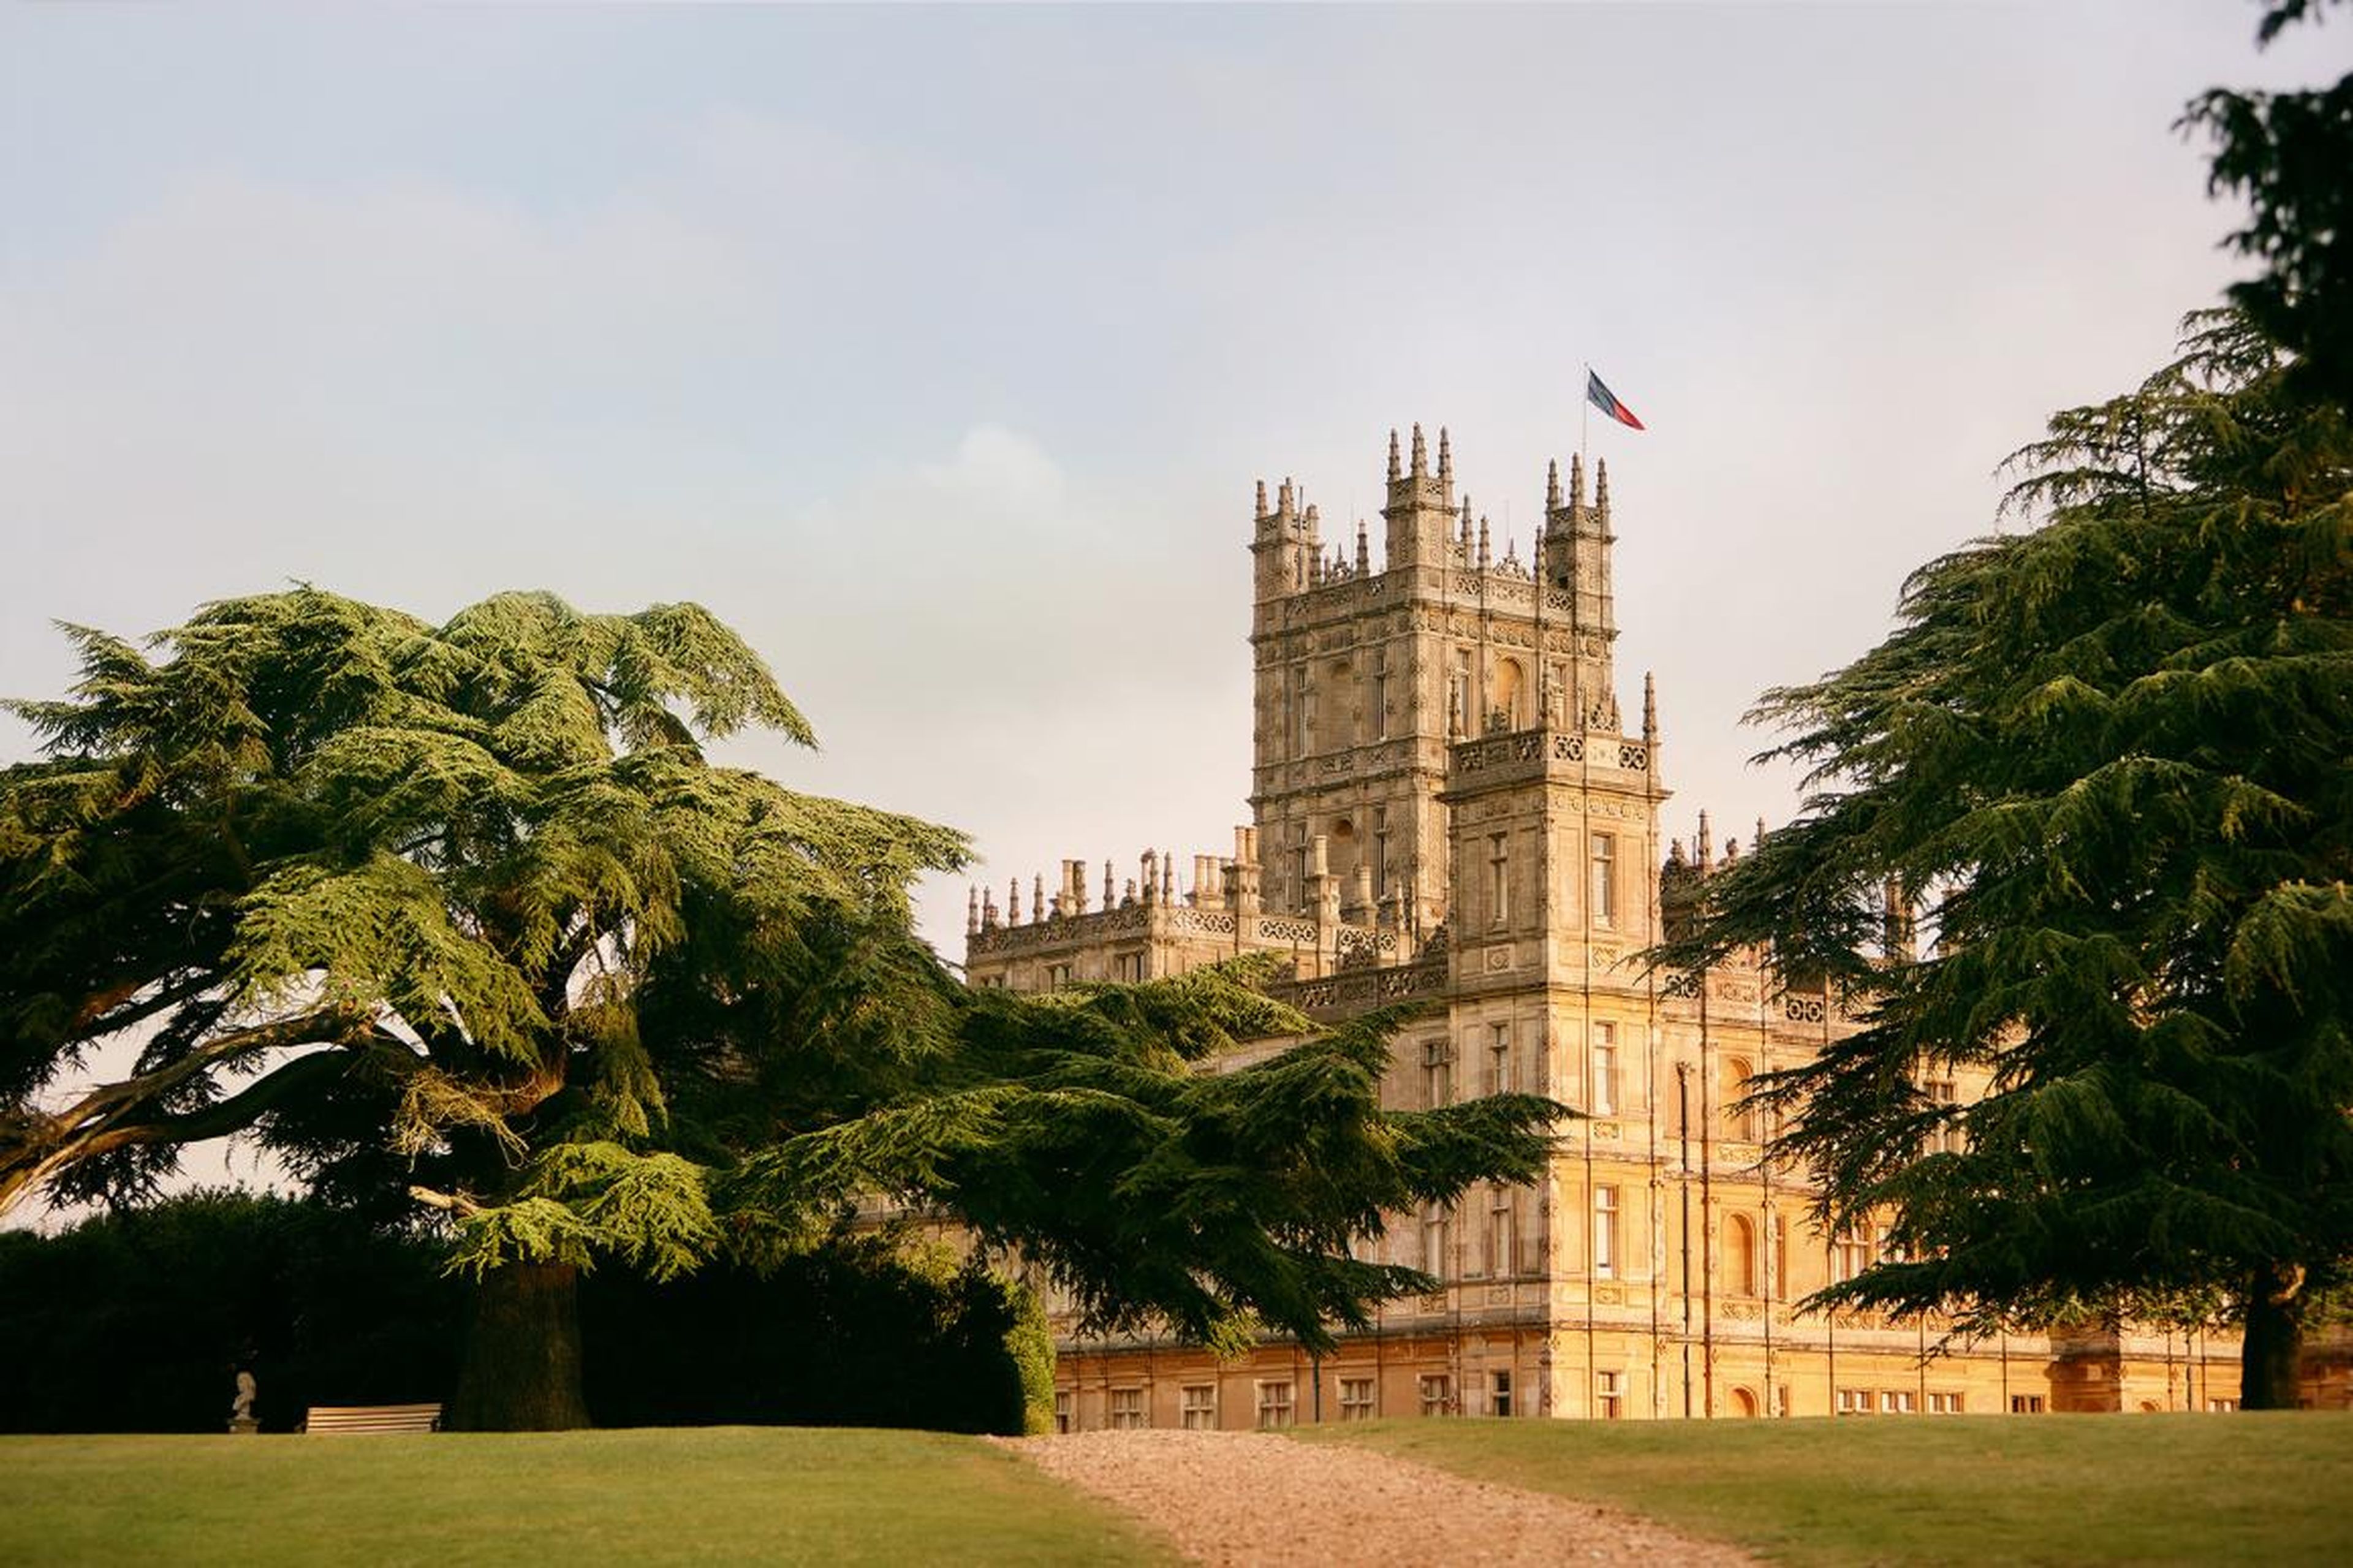 Dos superfans pasarán la noche en el emblemático castillo de "Downton Abbey".